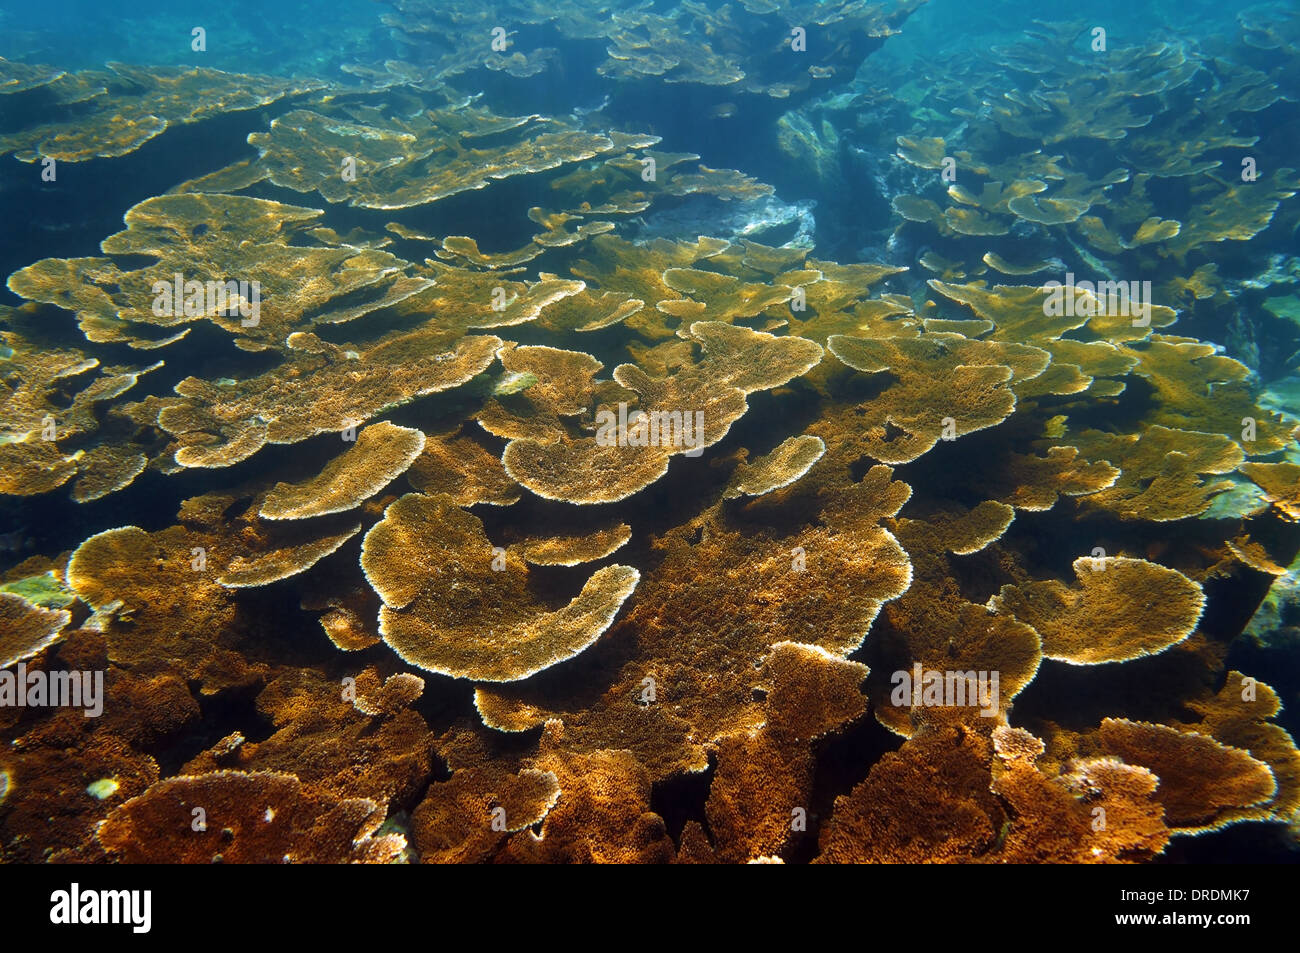 Fondos marinos con arrecifes de coral Elkhorn saludable colonia, mar Caribe, Islas de la Bahía, Roatán, Honduras Foto de stock